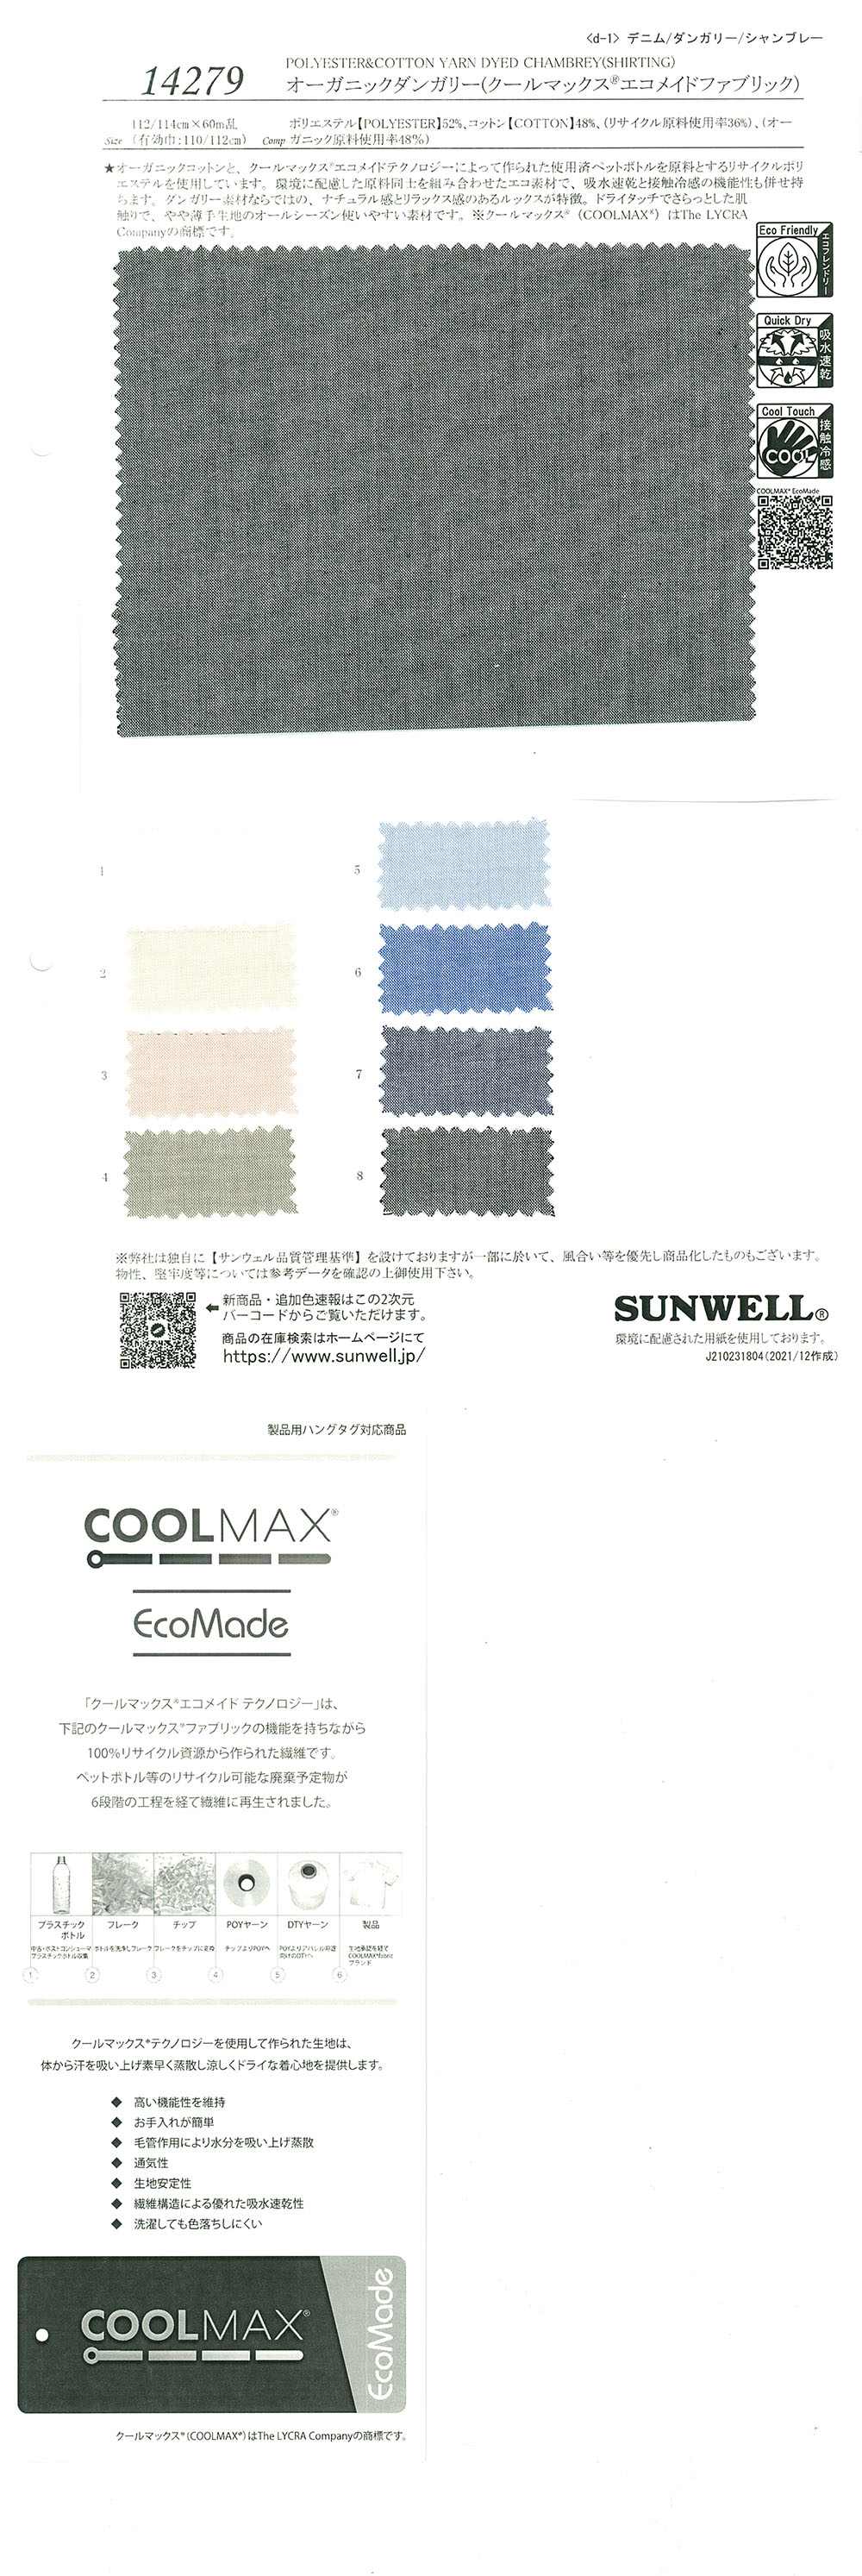 14279 Salopette Organica (Tessuto Ecomade Coolmax(R))[Tessile / Tessuto] SUNWELL